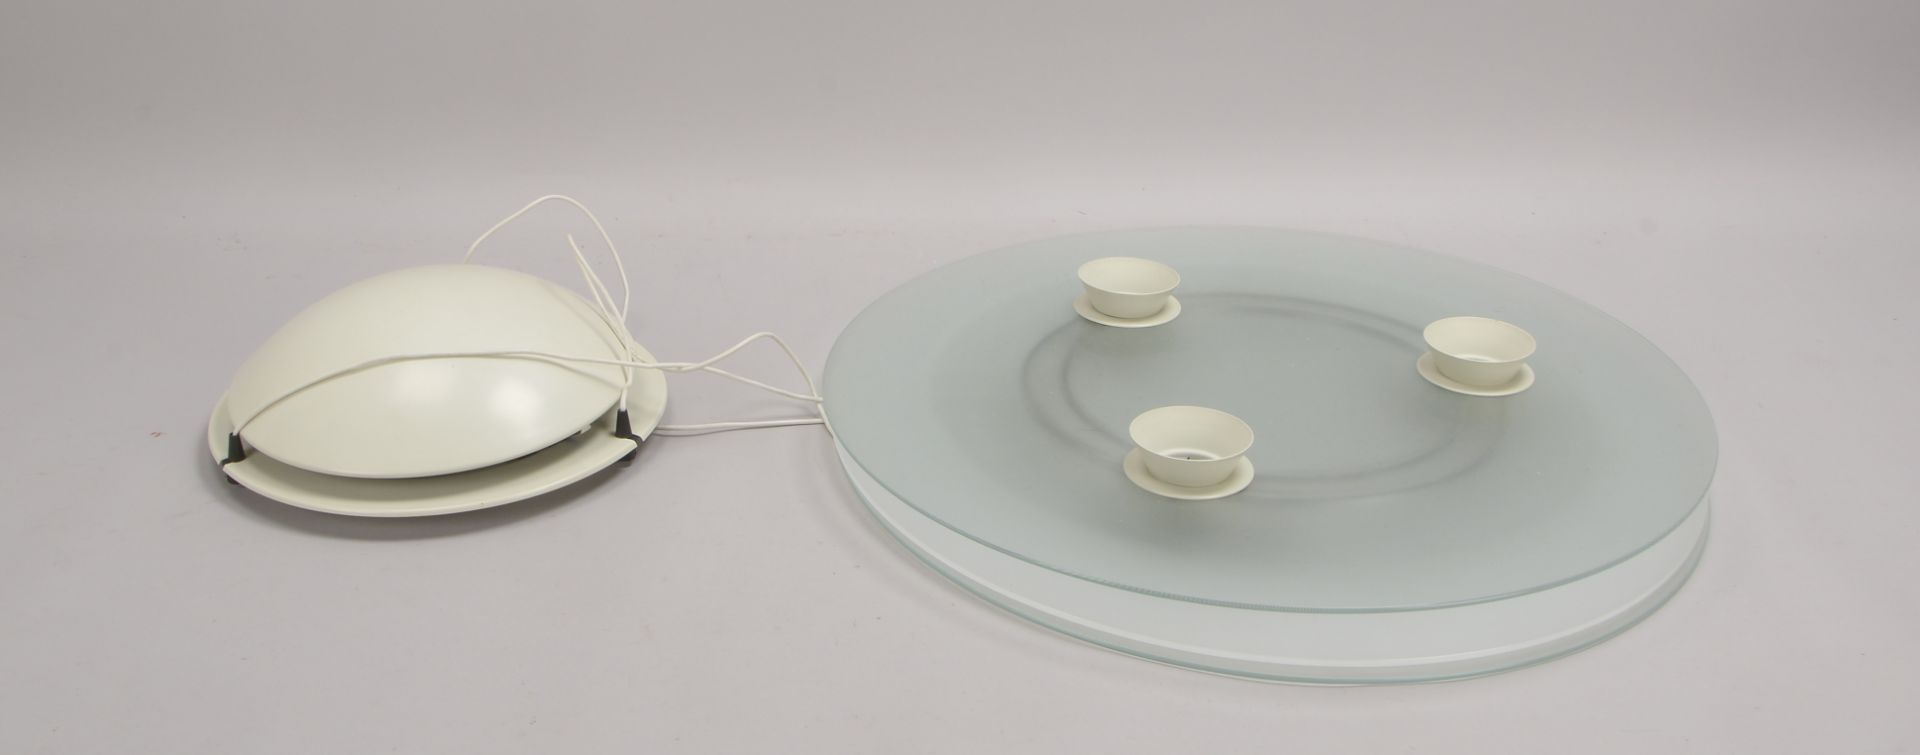 Designer-Deckenlampe, 3x Halogenlampen an runder Glasscheibe; Durchmesser Ø 60 cm - Bild 2 aus 2